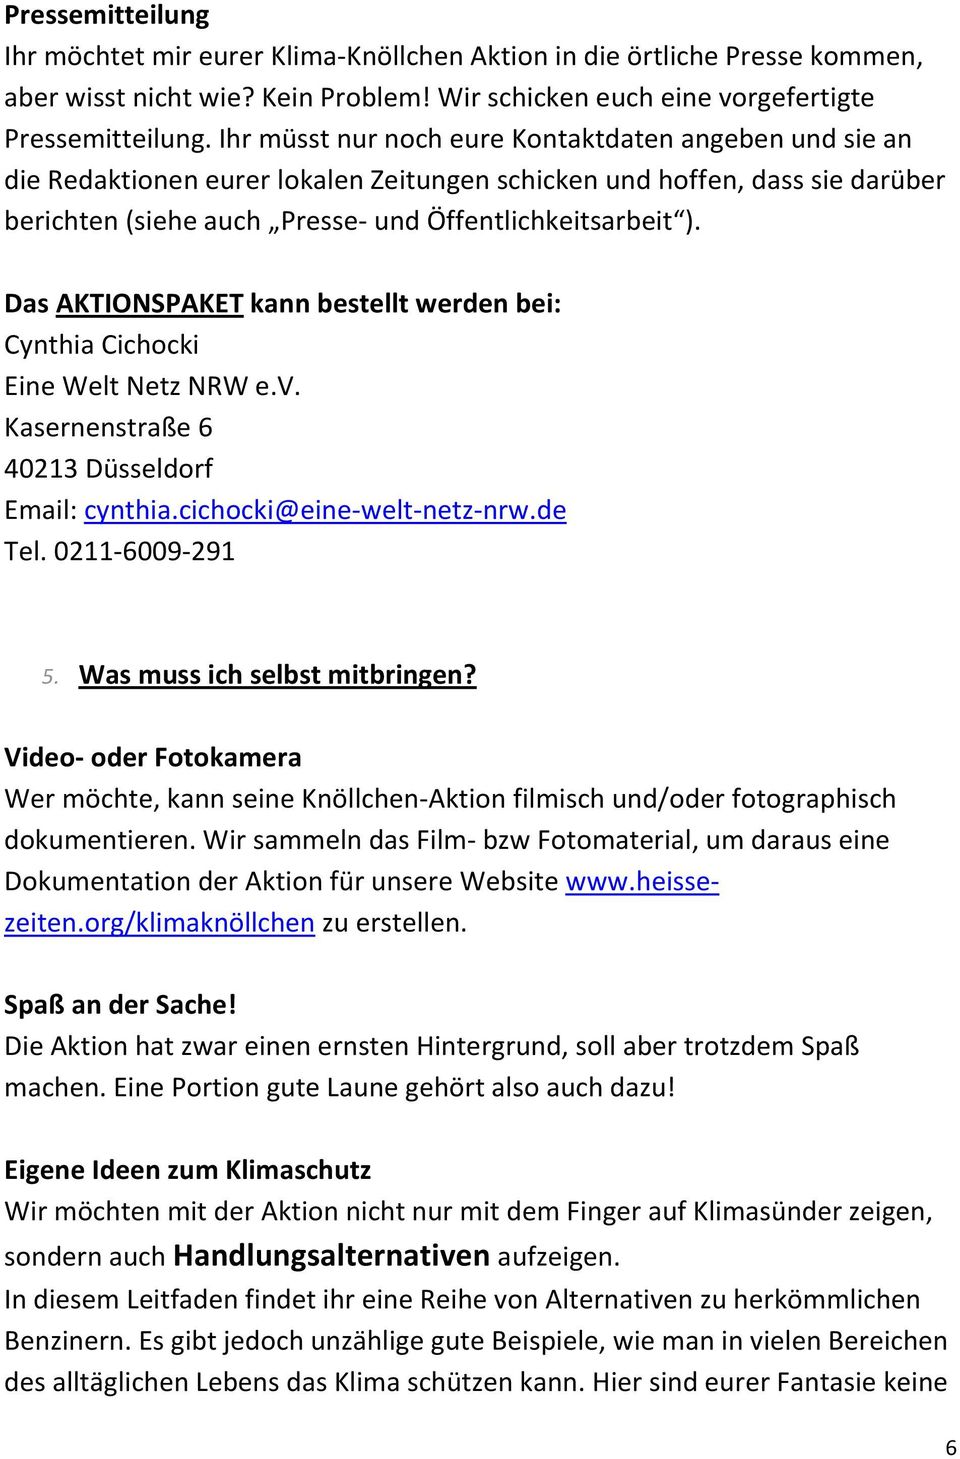 Das AKTIONSPAKET kann bestellt werden bei: Cynthia Cichocki Eine Welt Netz NRW e.v. Kasernenstraße 6 40213 Düsseldorf Email: cynthia.cichocki@eine-welt-netz-nrw.de Tel. 0211-6009-291 5.